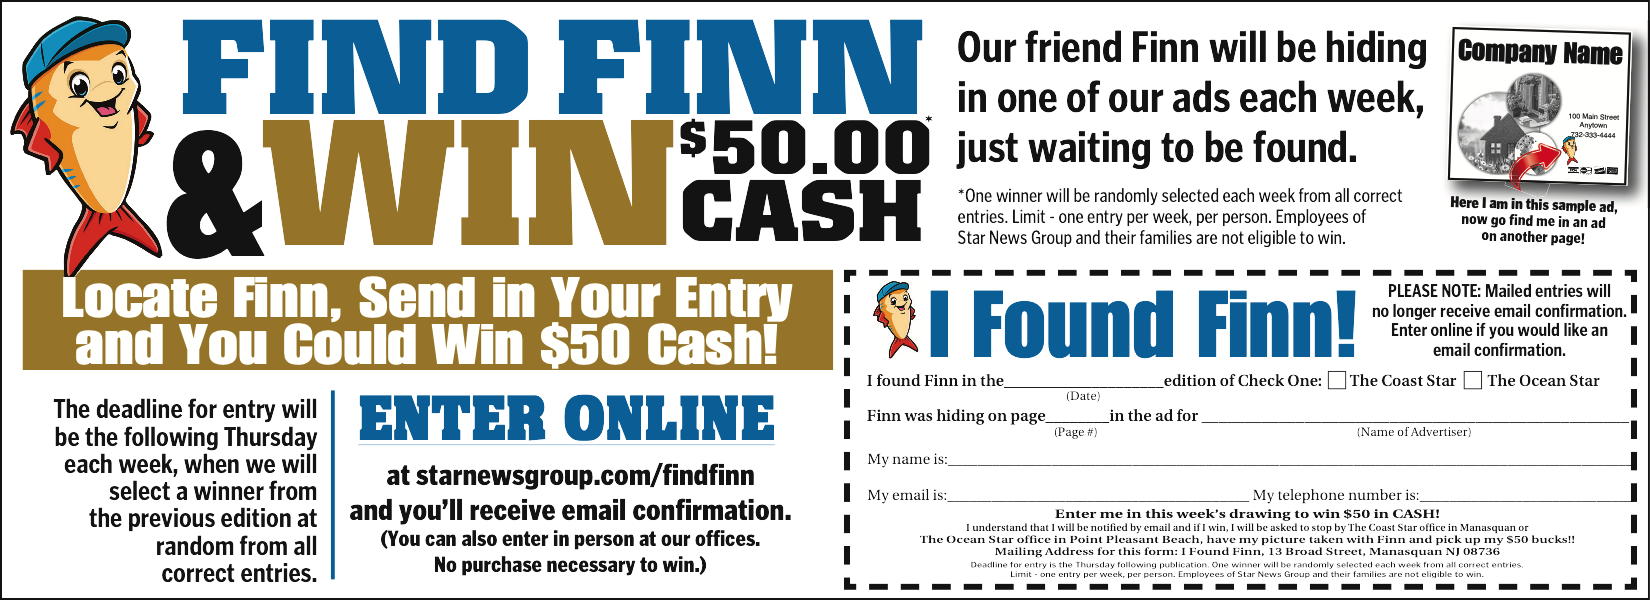 Find Finn 6x4 with form.jpg